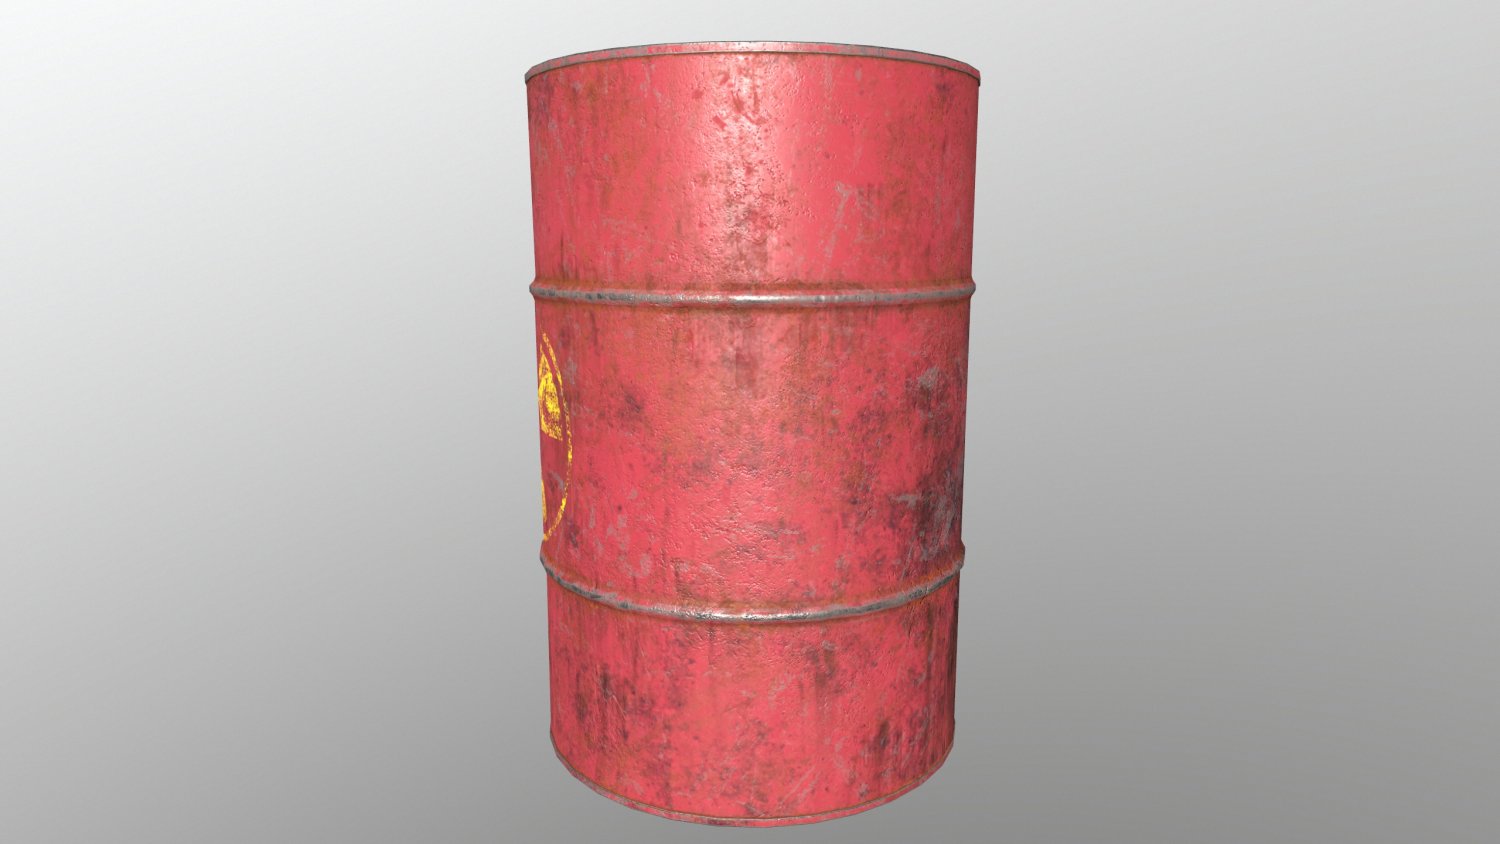 Barrel costume rust фото 88